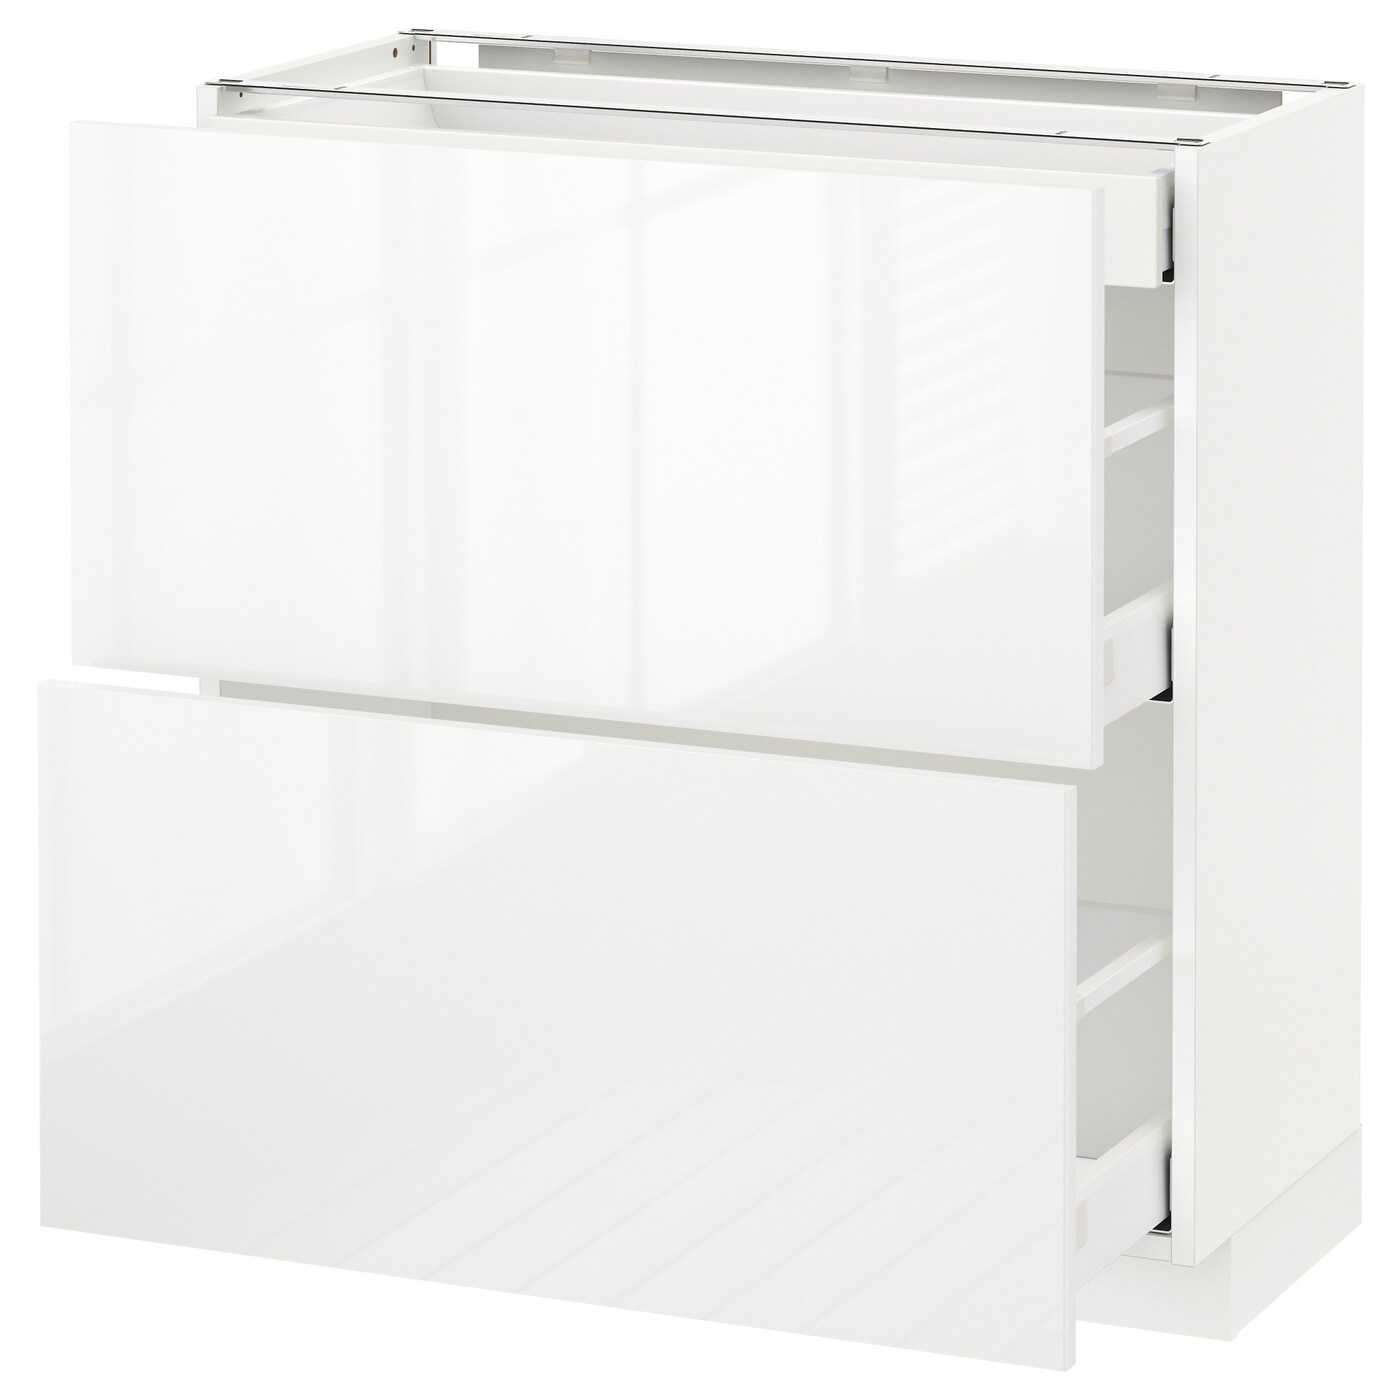 Напольный кухонный шкаф  - IKEA METOD MAXIMERA, 88x39,4x80см, белый, МЕТОД МАКСИМЕРА ИКЕА